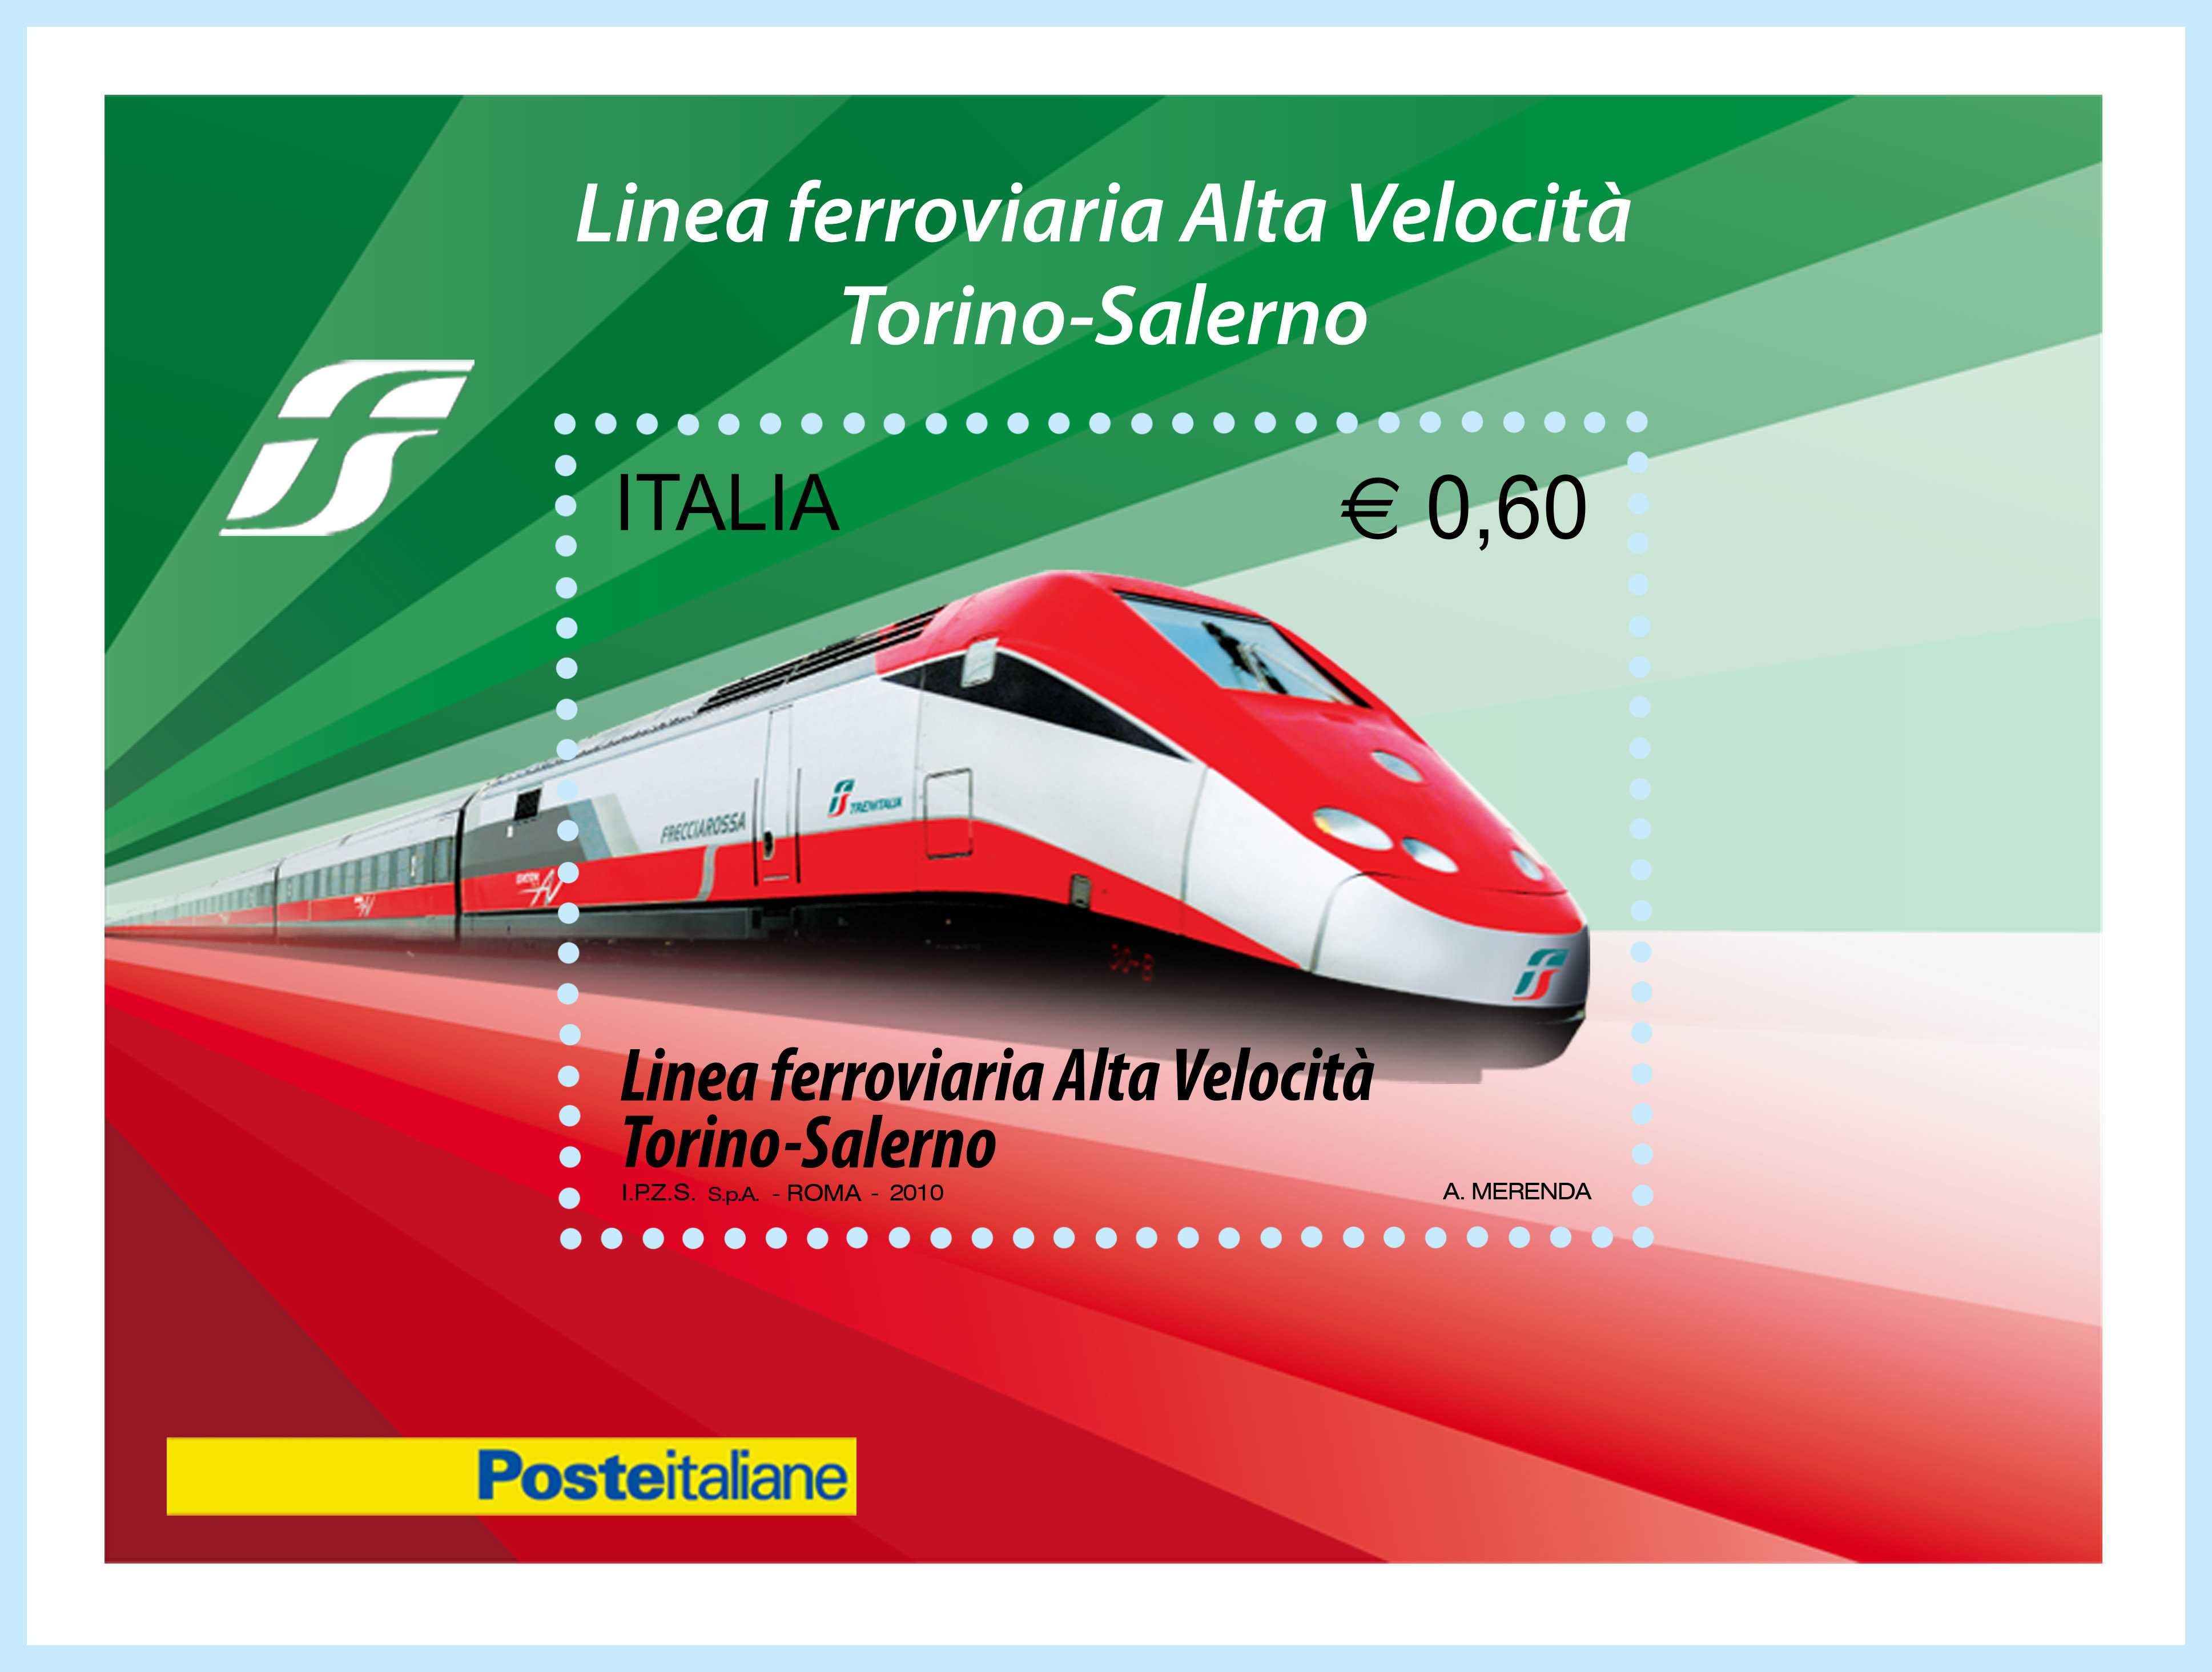 FS: presentato a Napolitano, francobollo celebrativo altà velocità italiana